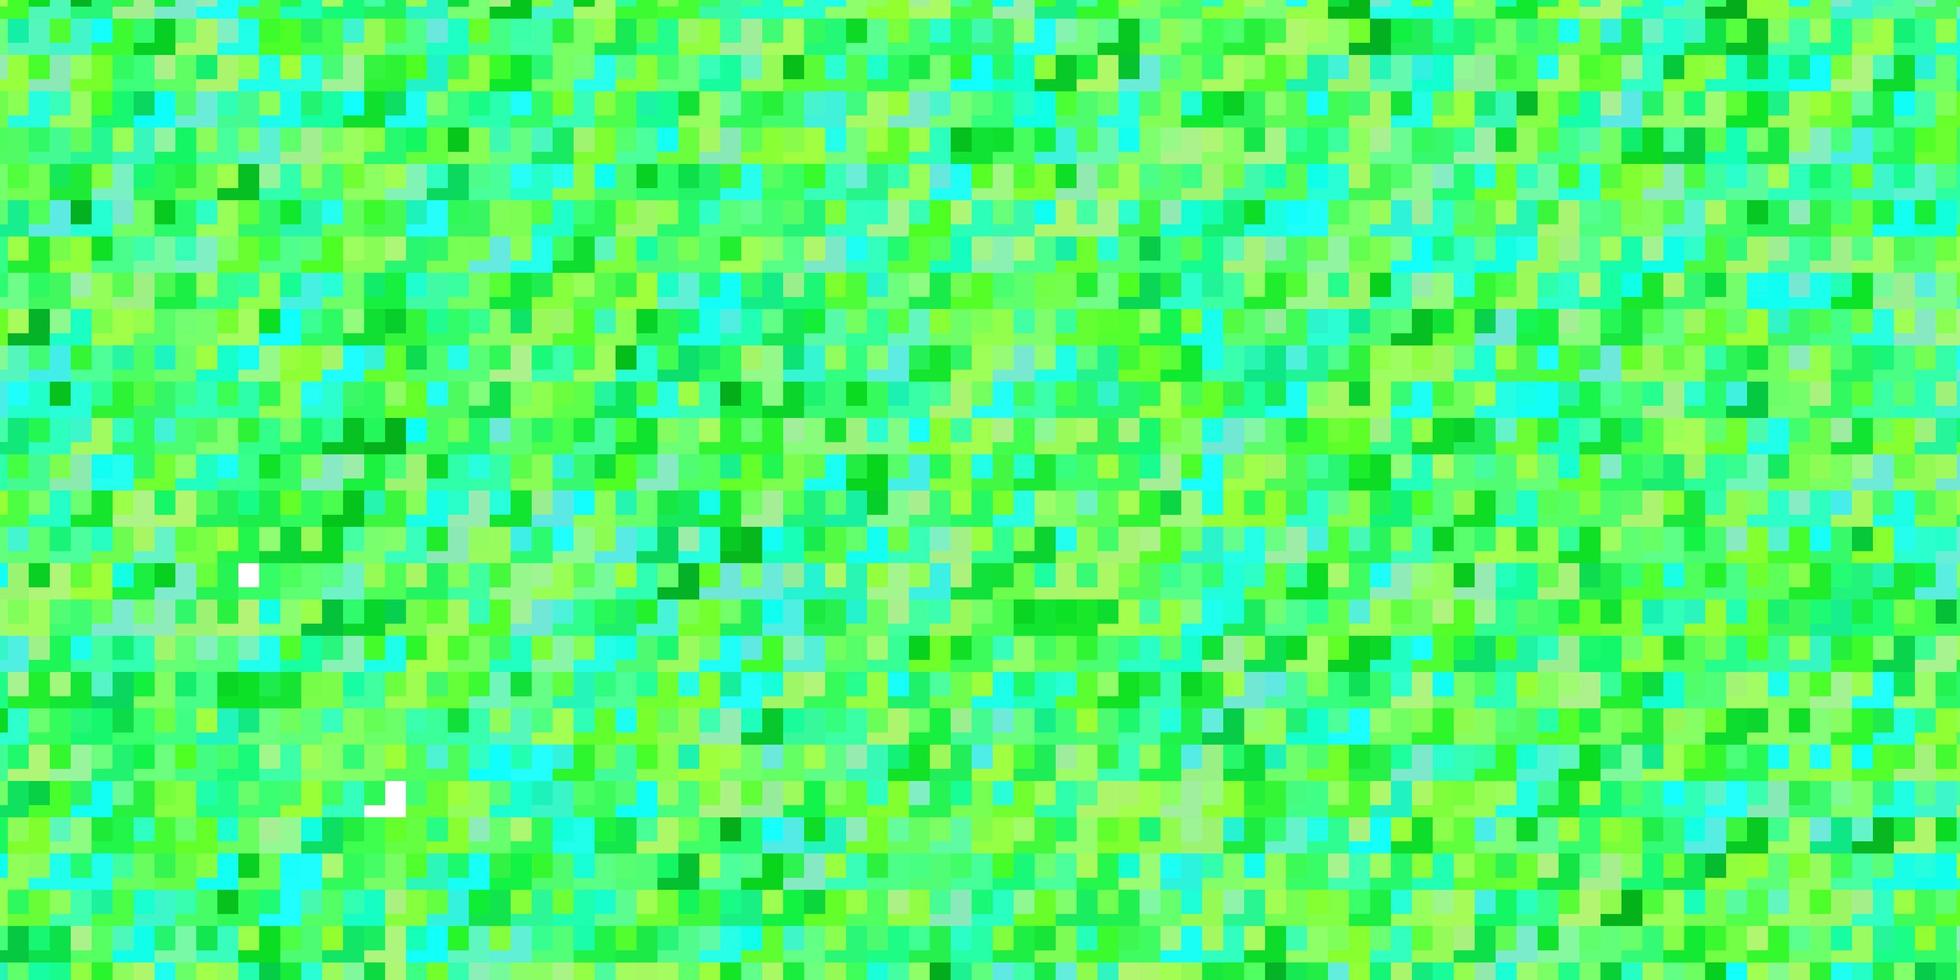 padrão azul e verde em estilo quadrado. vetor